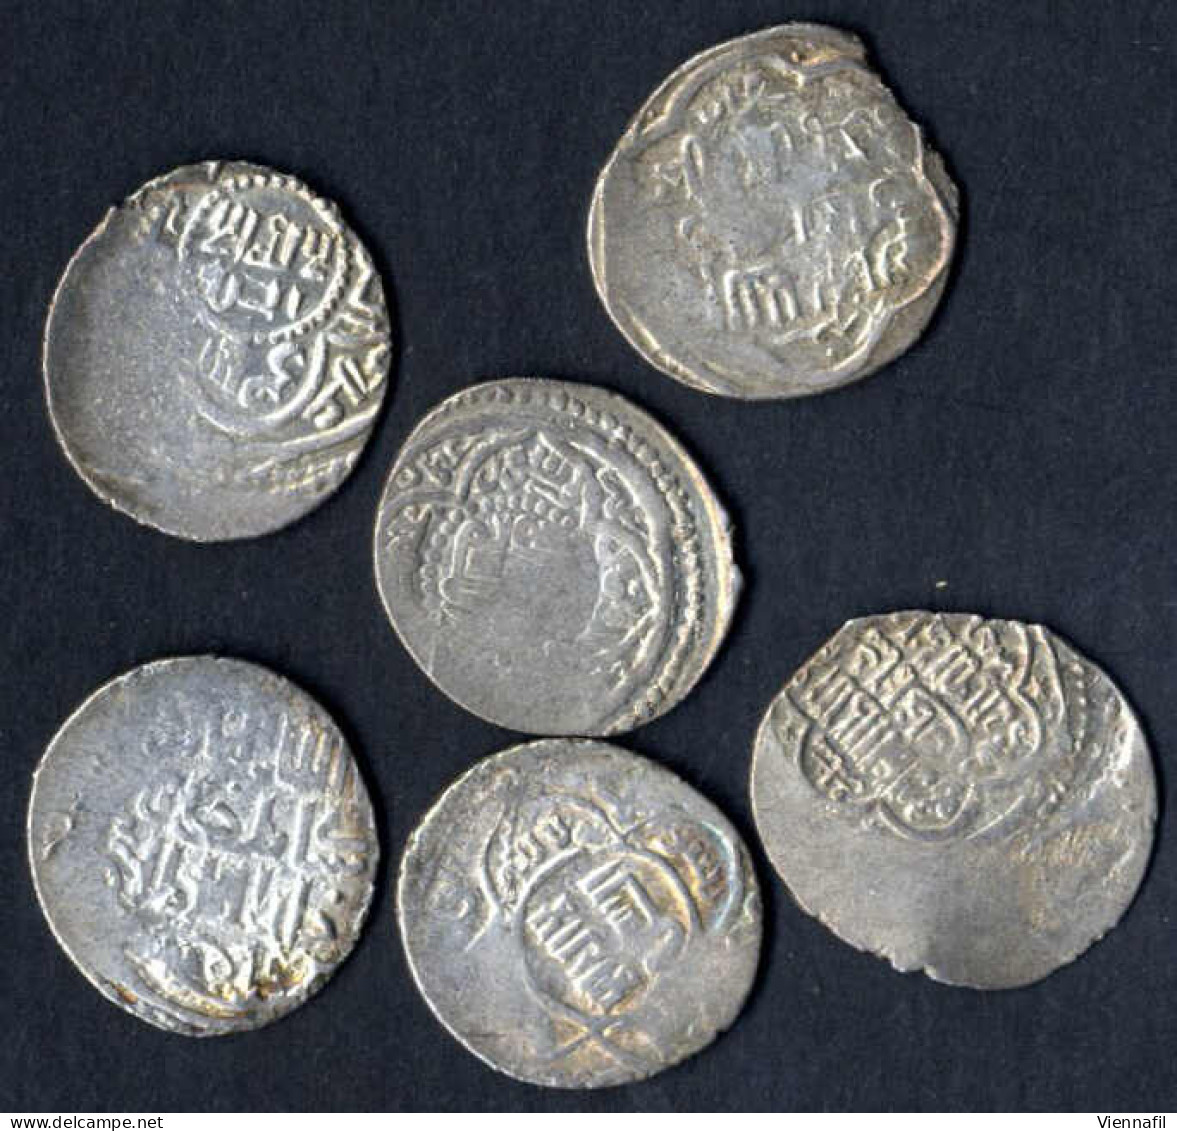 Sati Beg, 739-740AH 1339-1340, Doppeldirham 9. Ausgabe Silber, Ohne Jahr Hisn, Mich 1710, Sehr Schön-, 6 Stück, Selten - Islamic